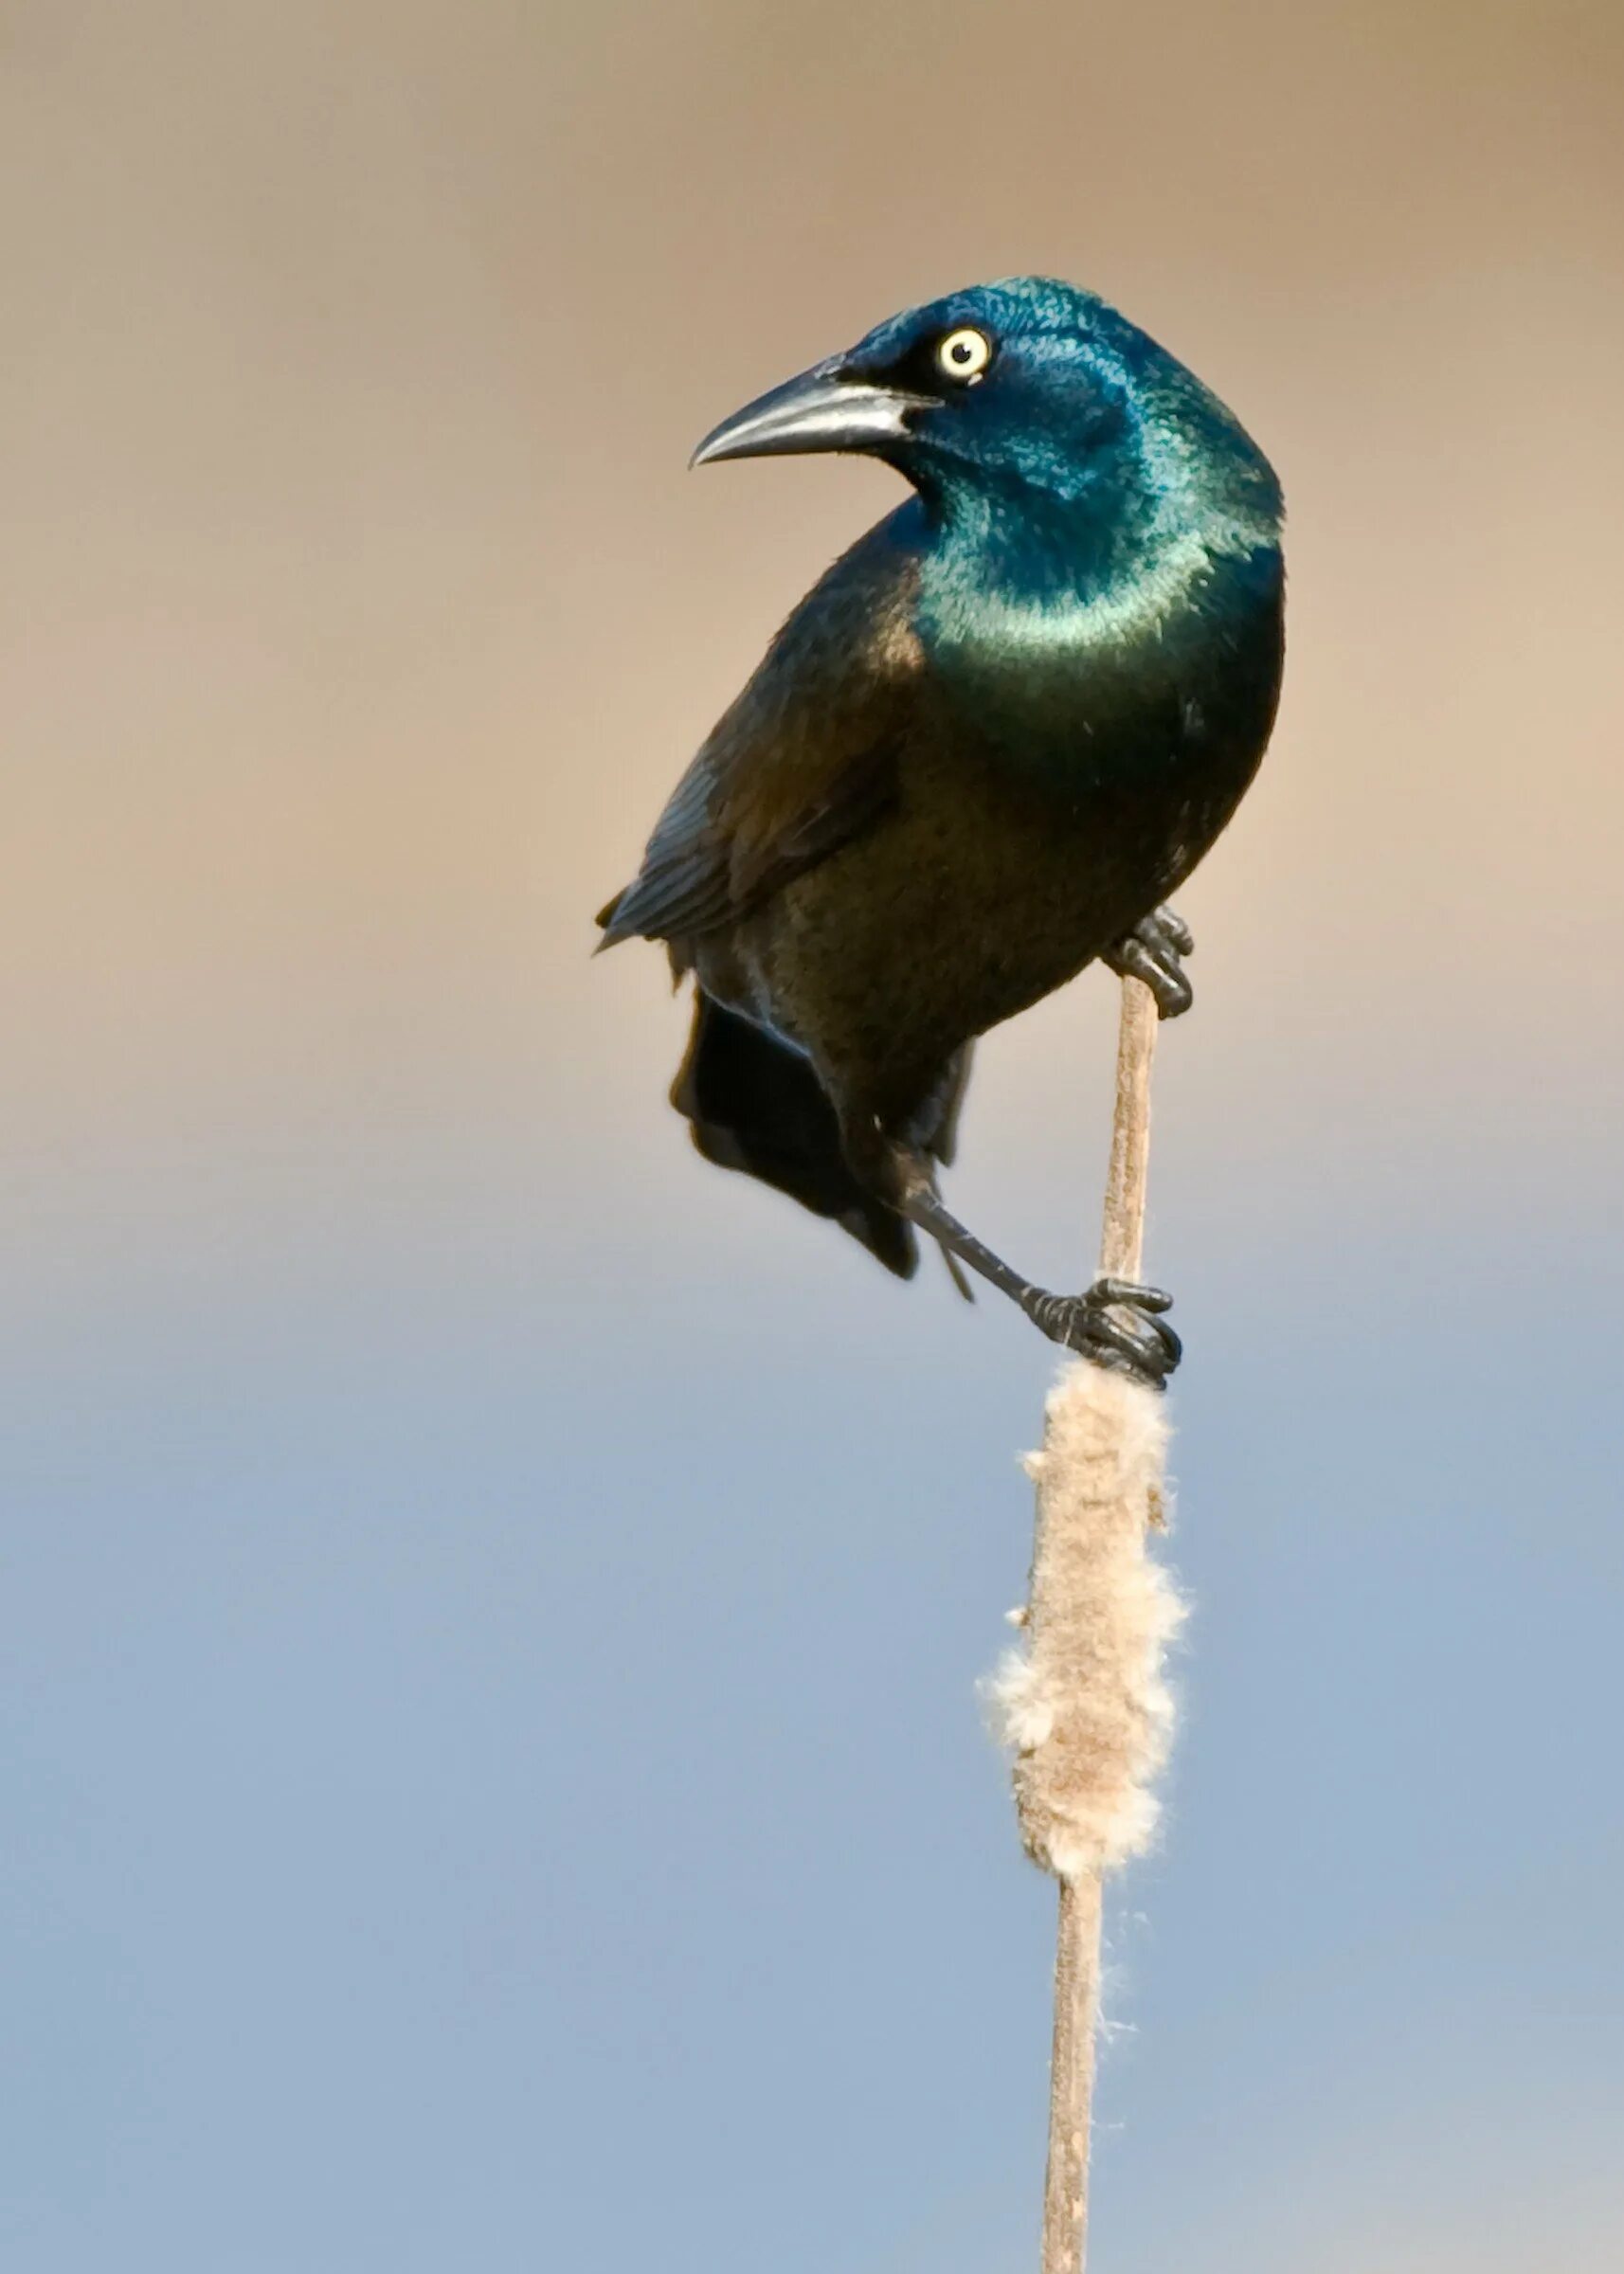 Птица с синей головой. Черная птица с зеленым отливом. Черная птичка с синей головой. Синяя птичка с длинным клювом.